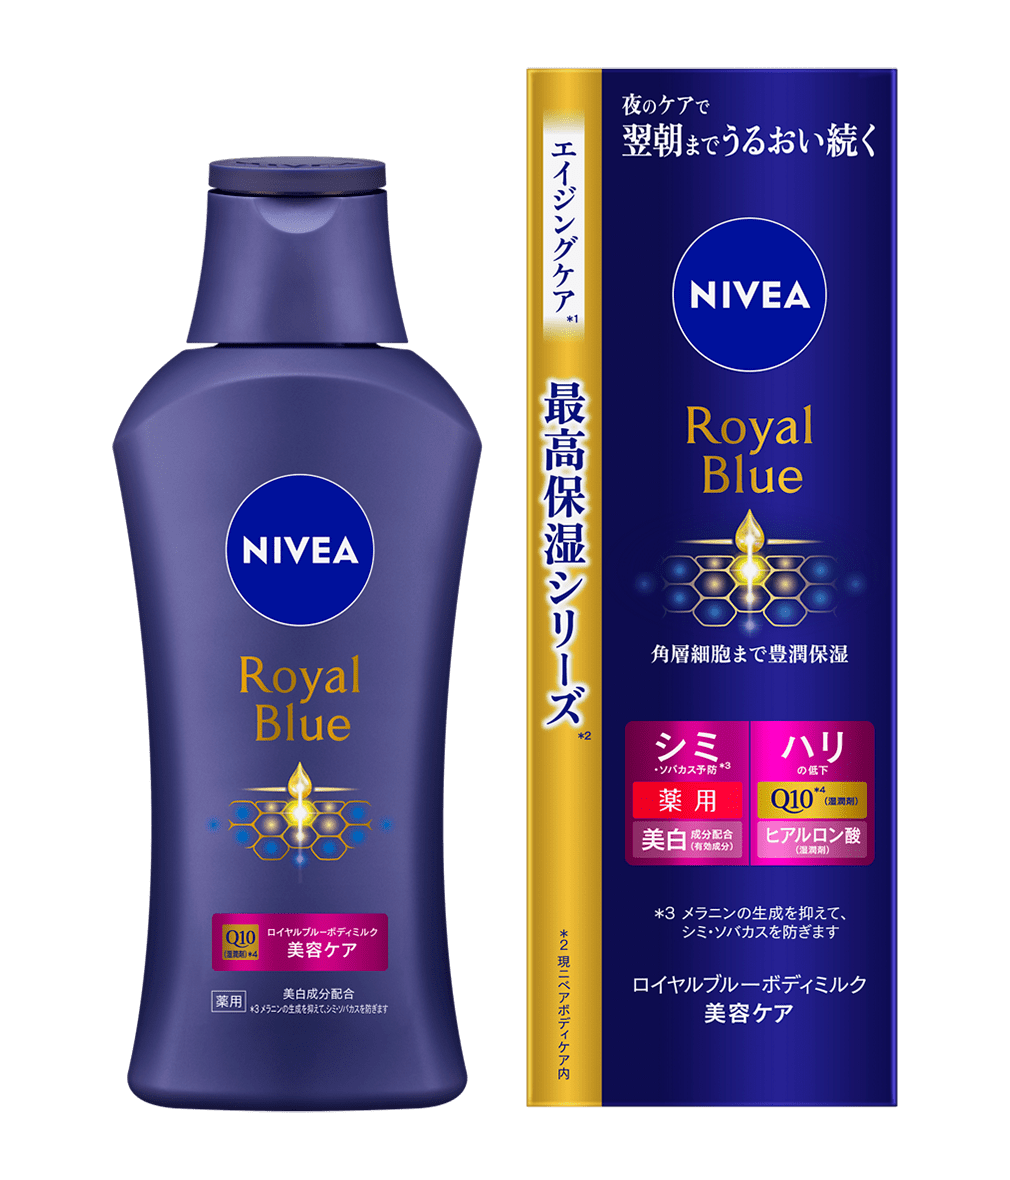 ニベア ロイヤルブルーボディミルク 美容ケア - NIVEA